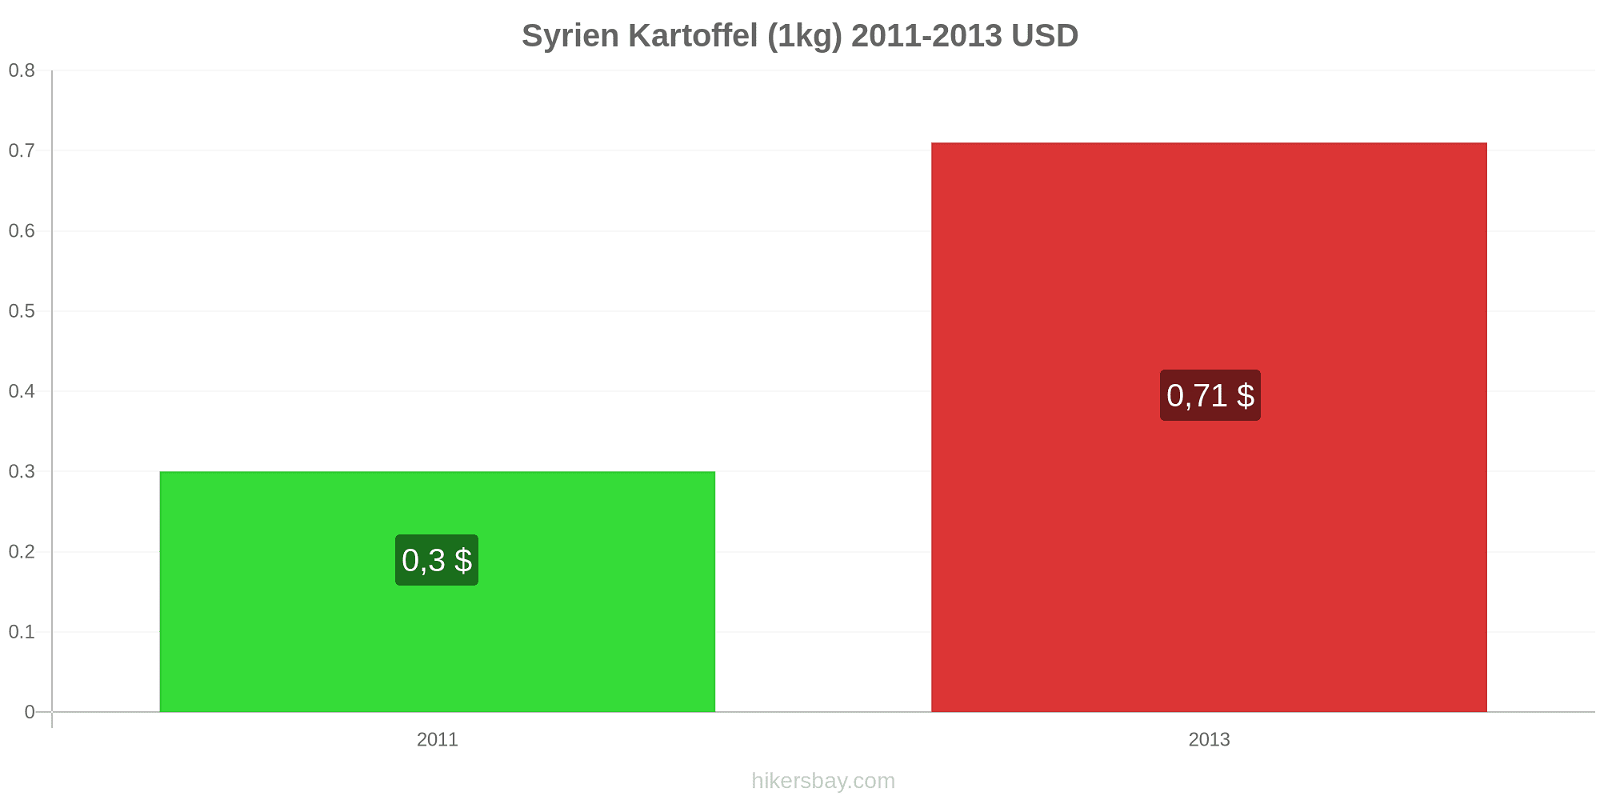 Syrien Preisänderungen Kartoffeln (1kg) hikersbay.com